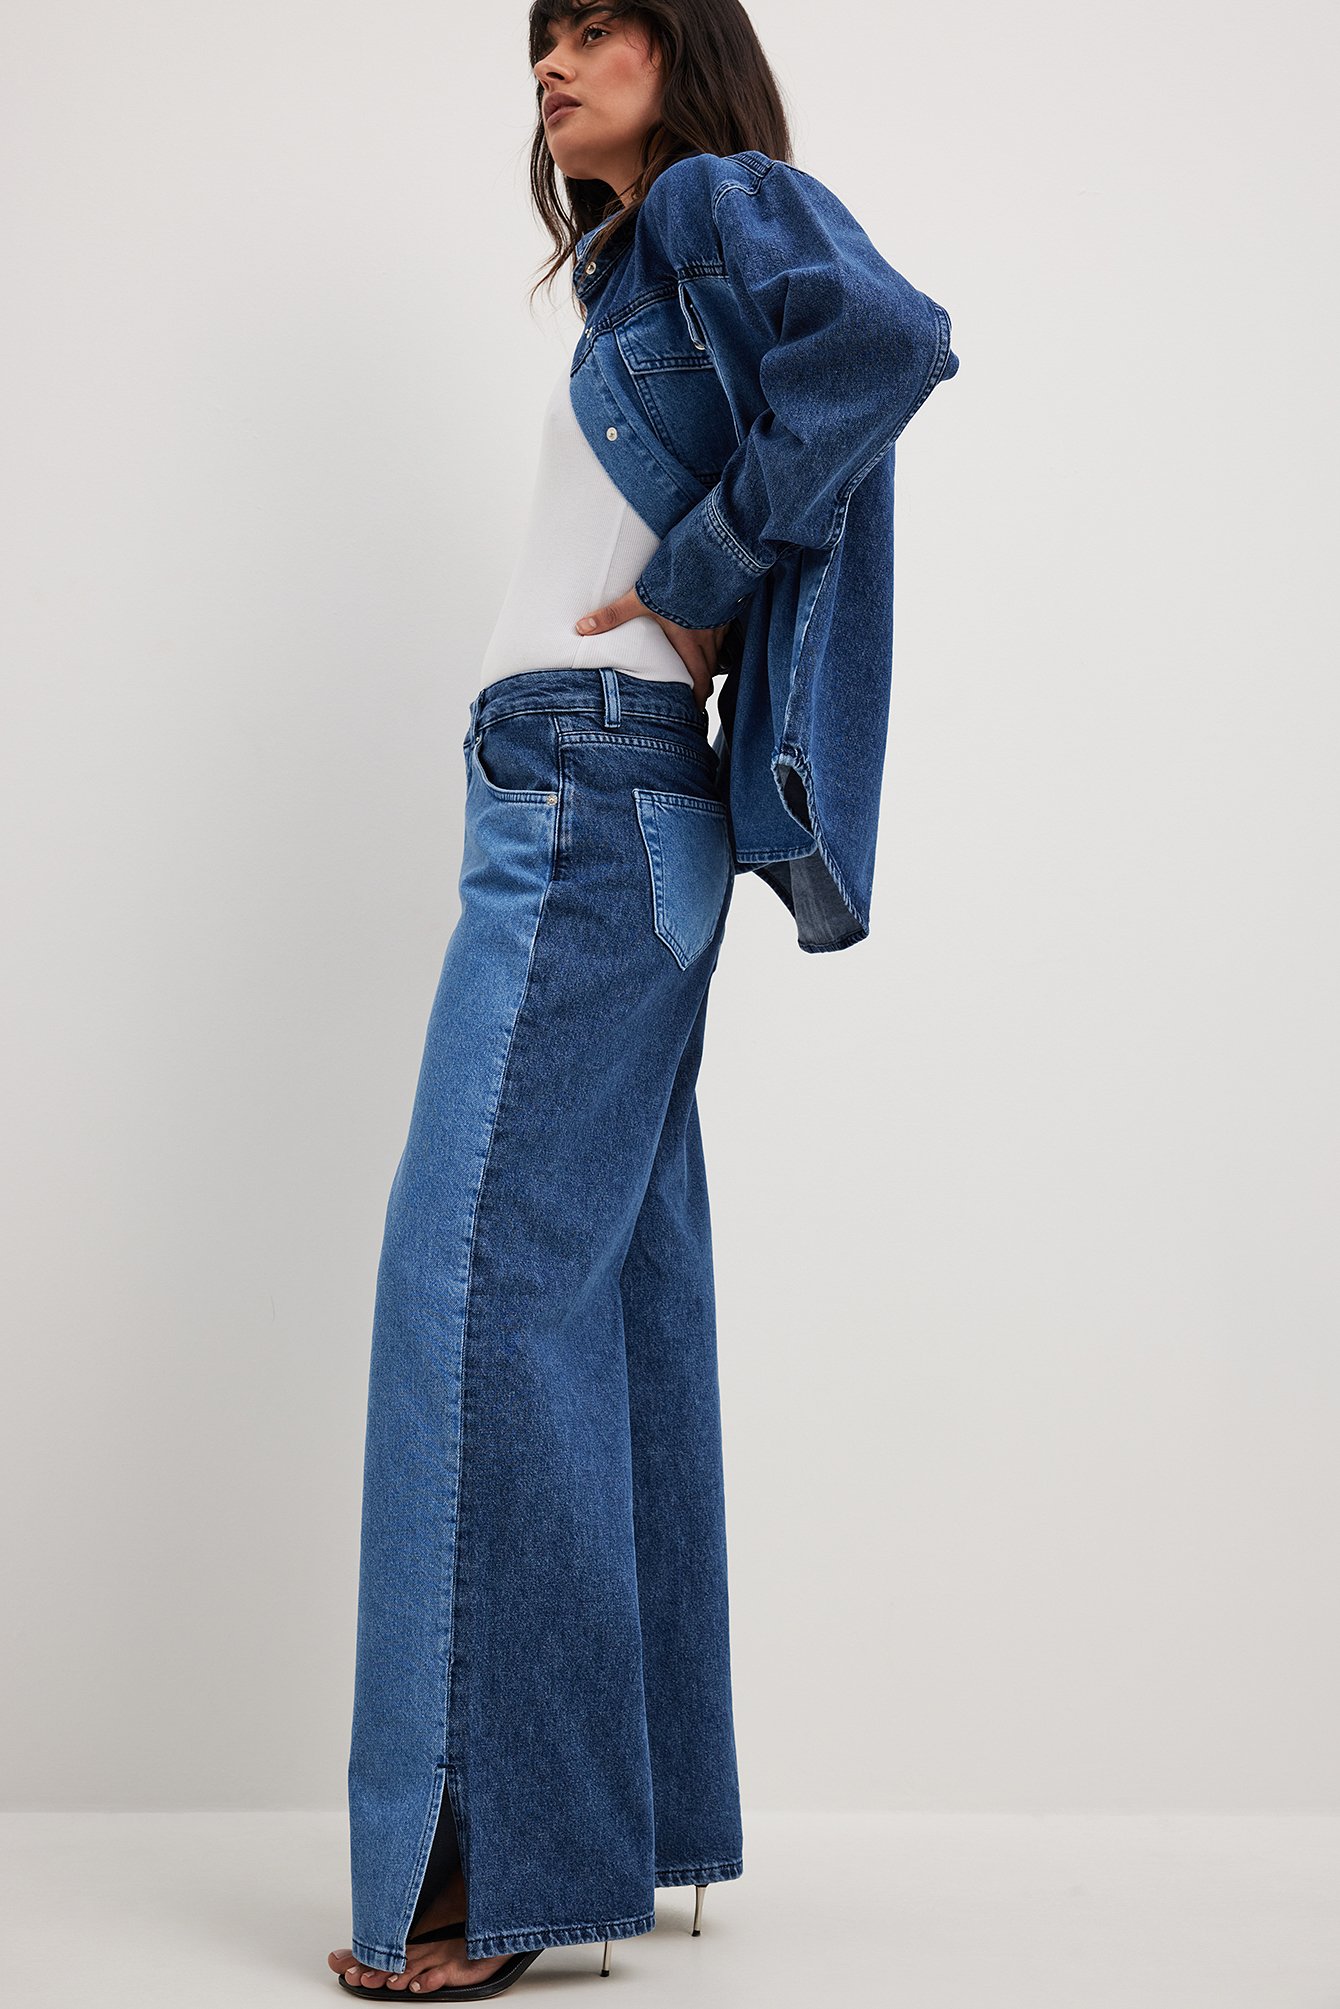 vriendelijke groet vrijgesteld Heb geleerd Two Coloured Jeans Blue | NA-KD